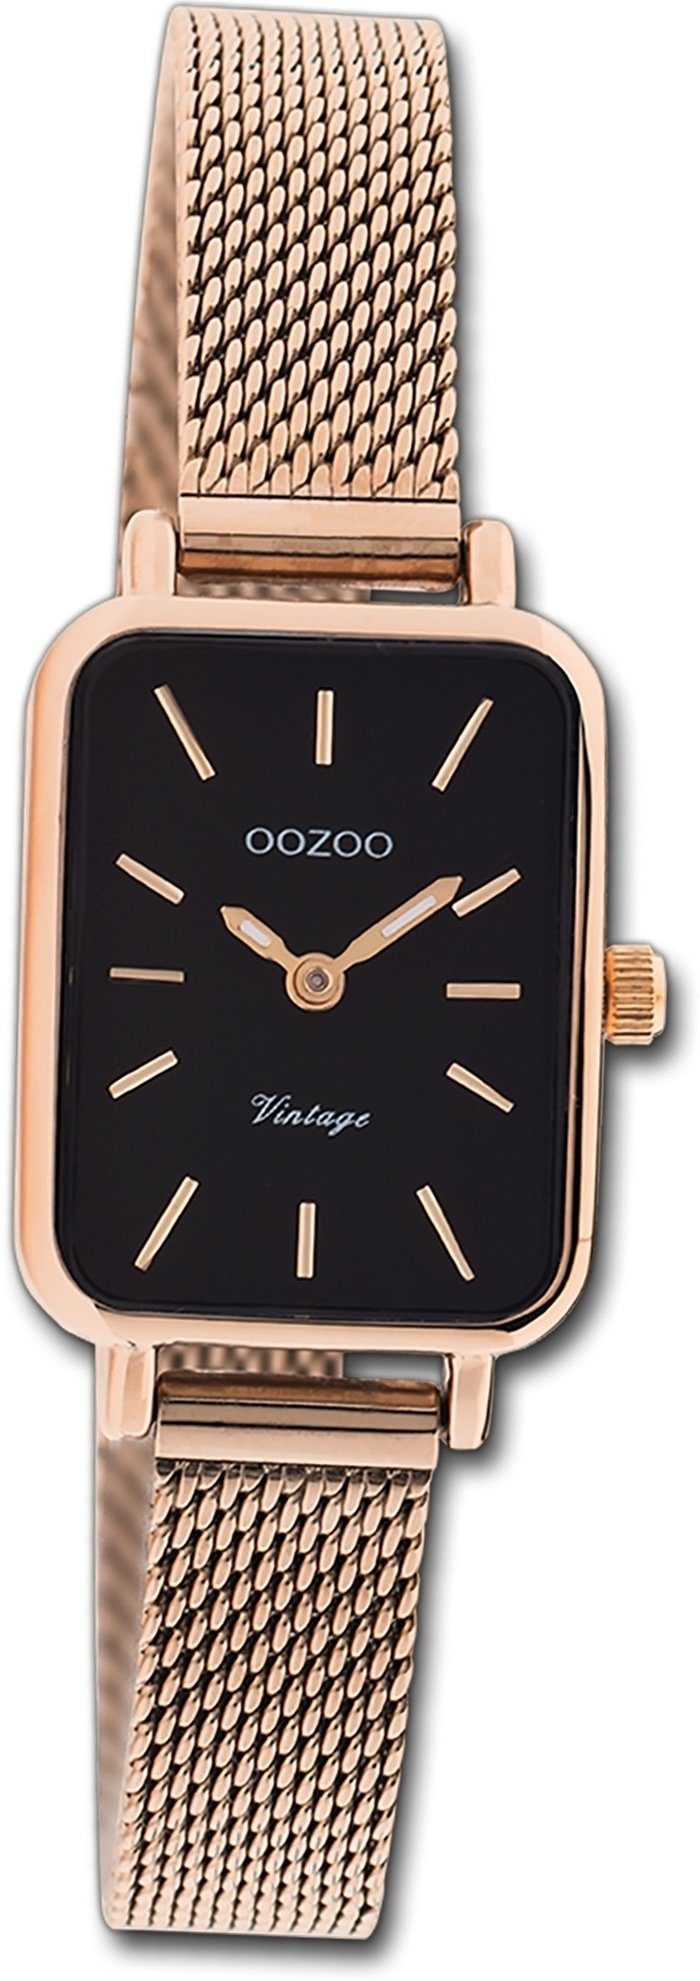 Vintage Series, rechteckiges 21x26mm) Oozoo Gehäuse, Armbanduhr klein Damenuhr Damen rosegold, (ca. Quarzuhr OOZOO